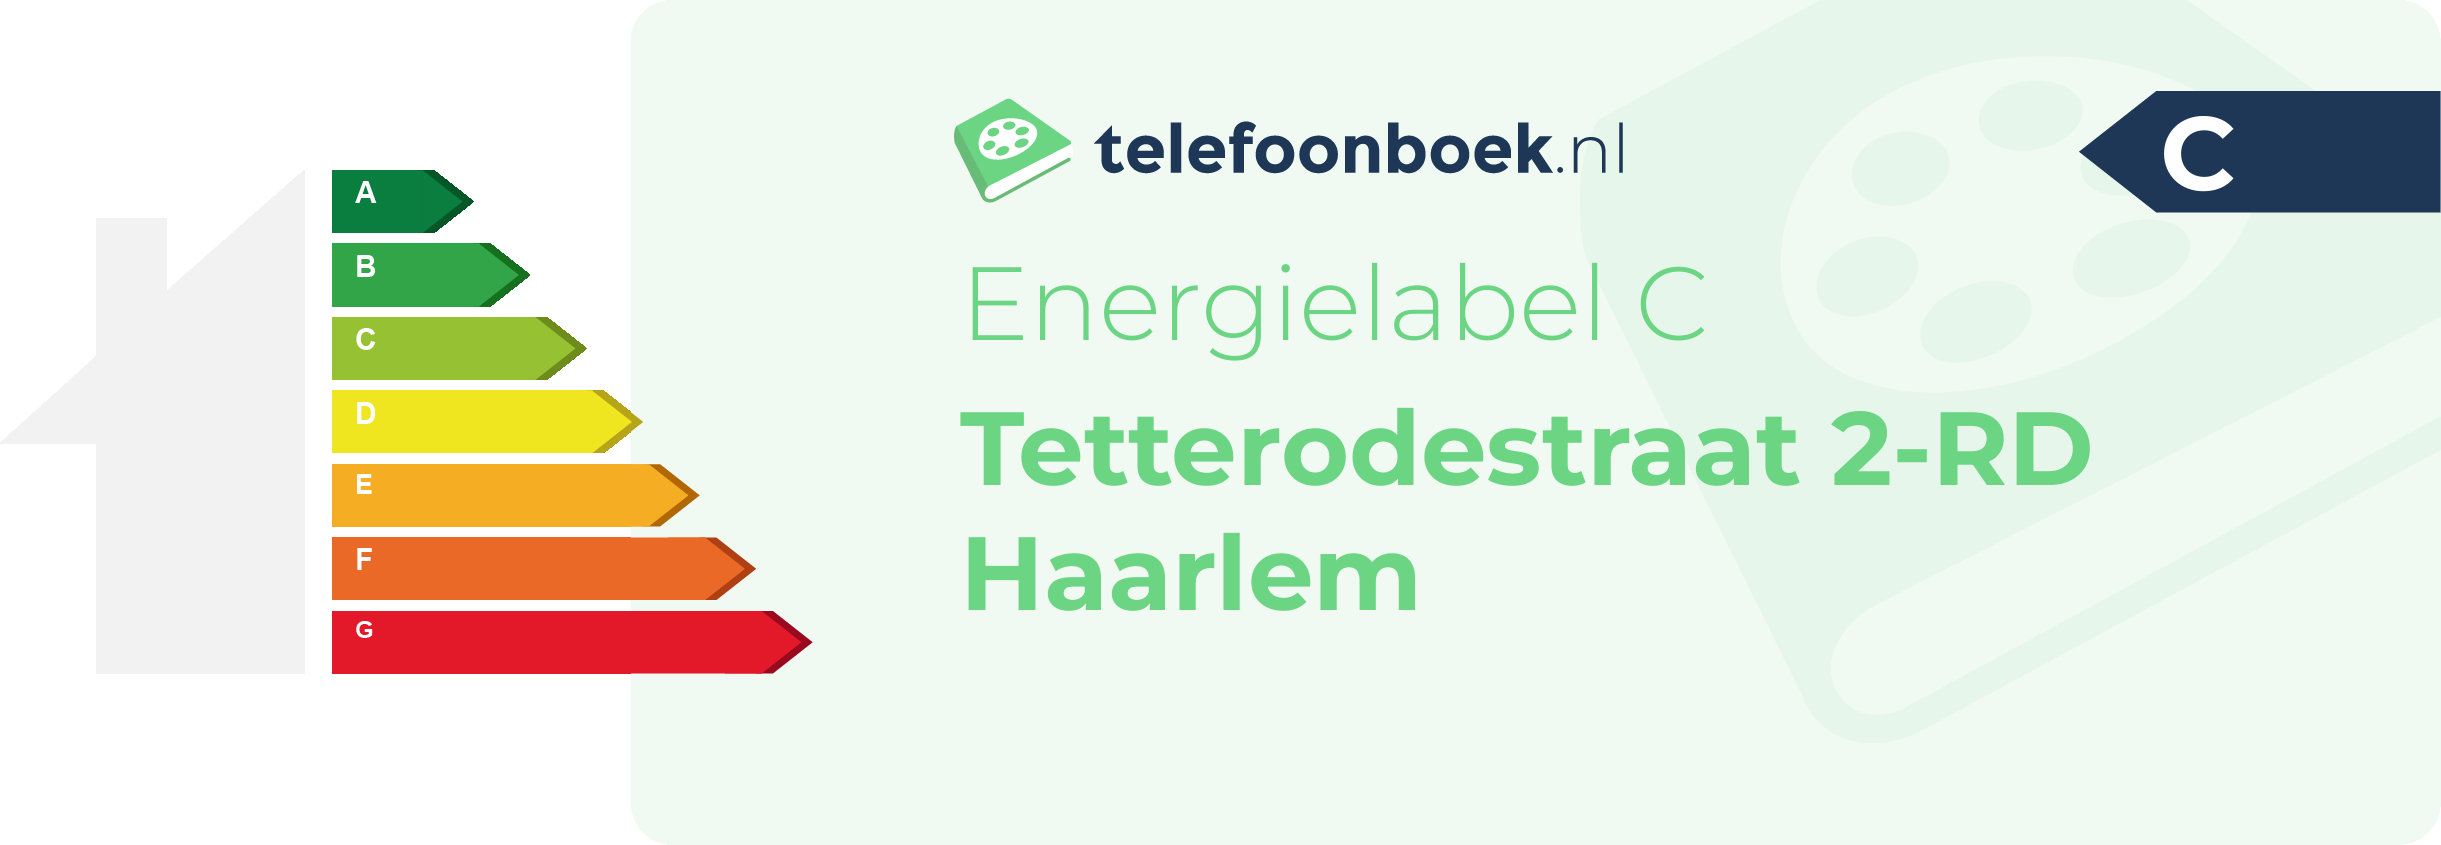 Energielabel Tetterodestraat 2-RD Haarlem